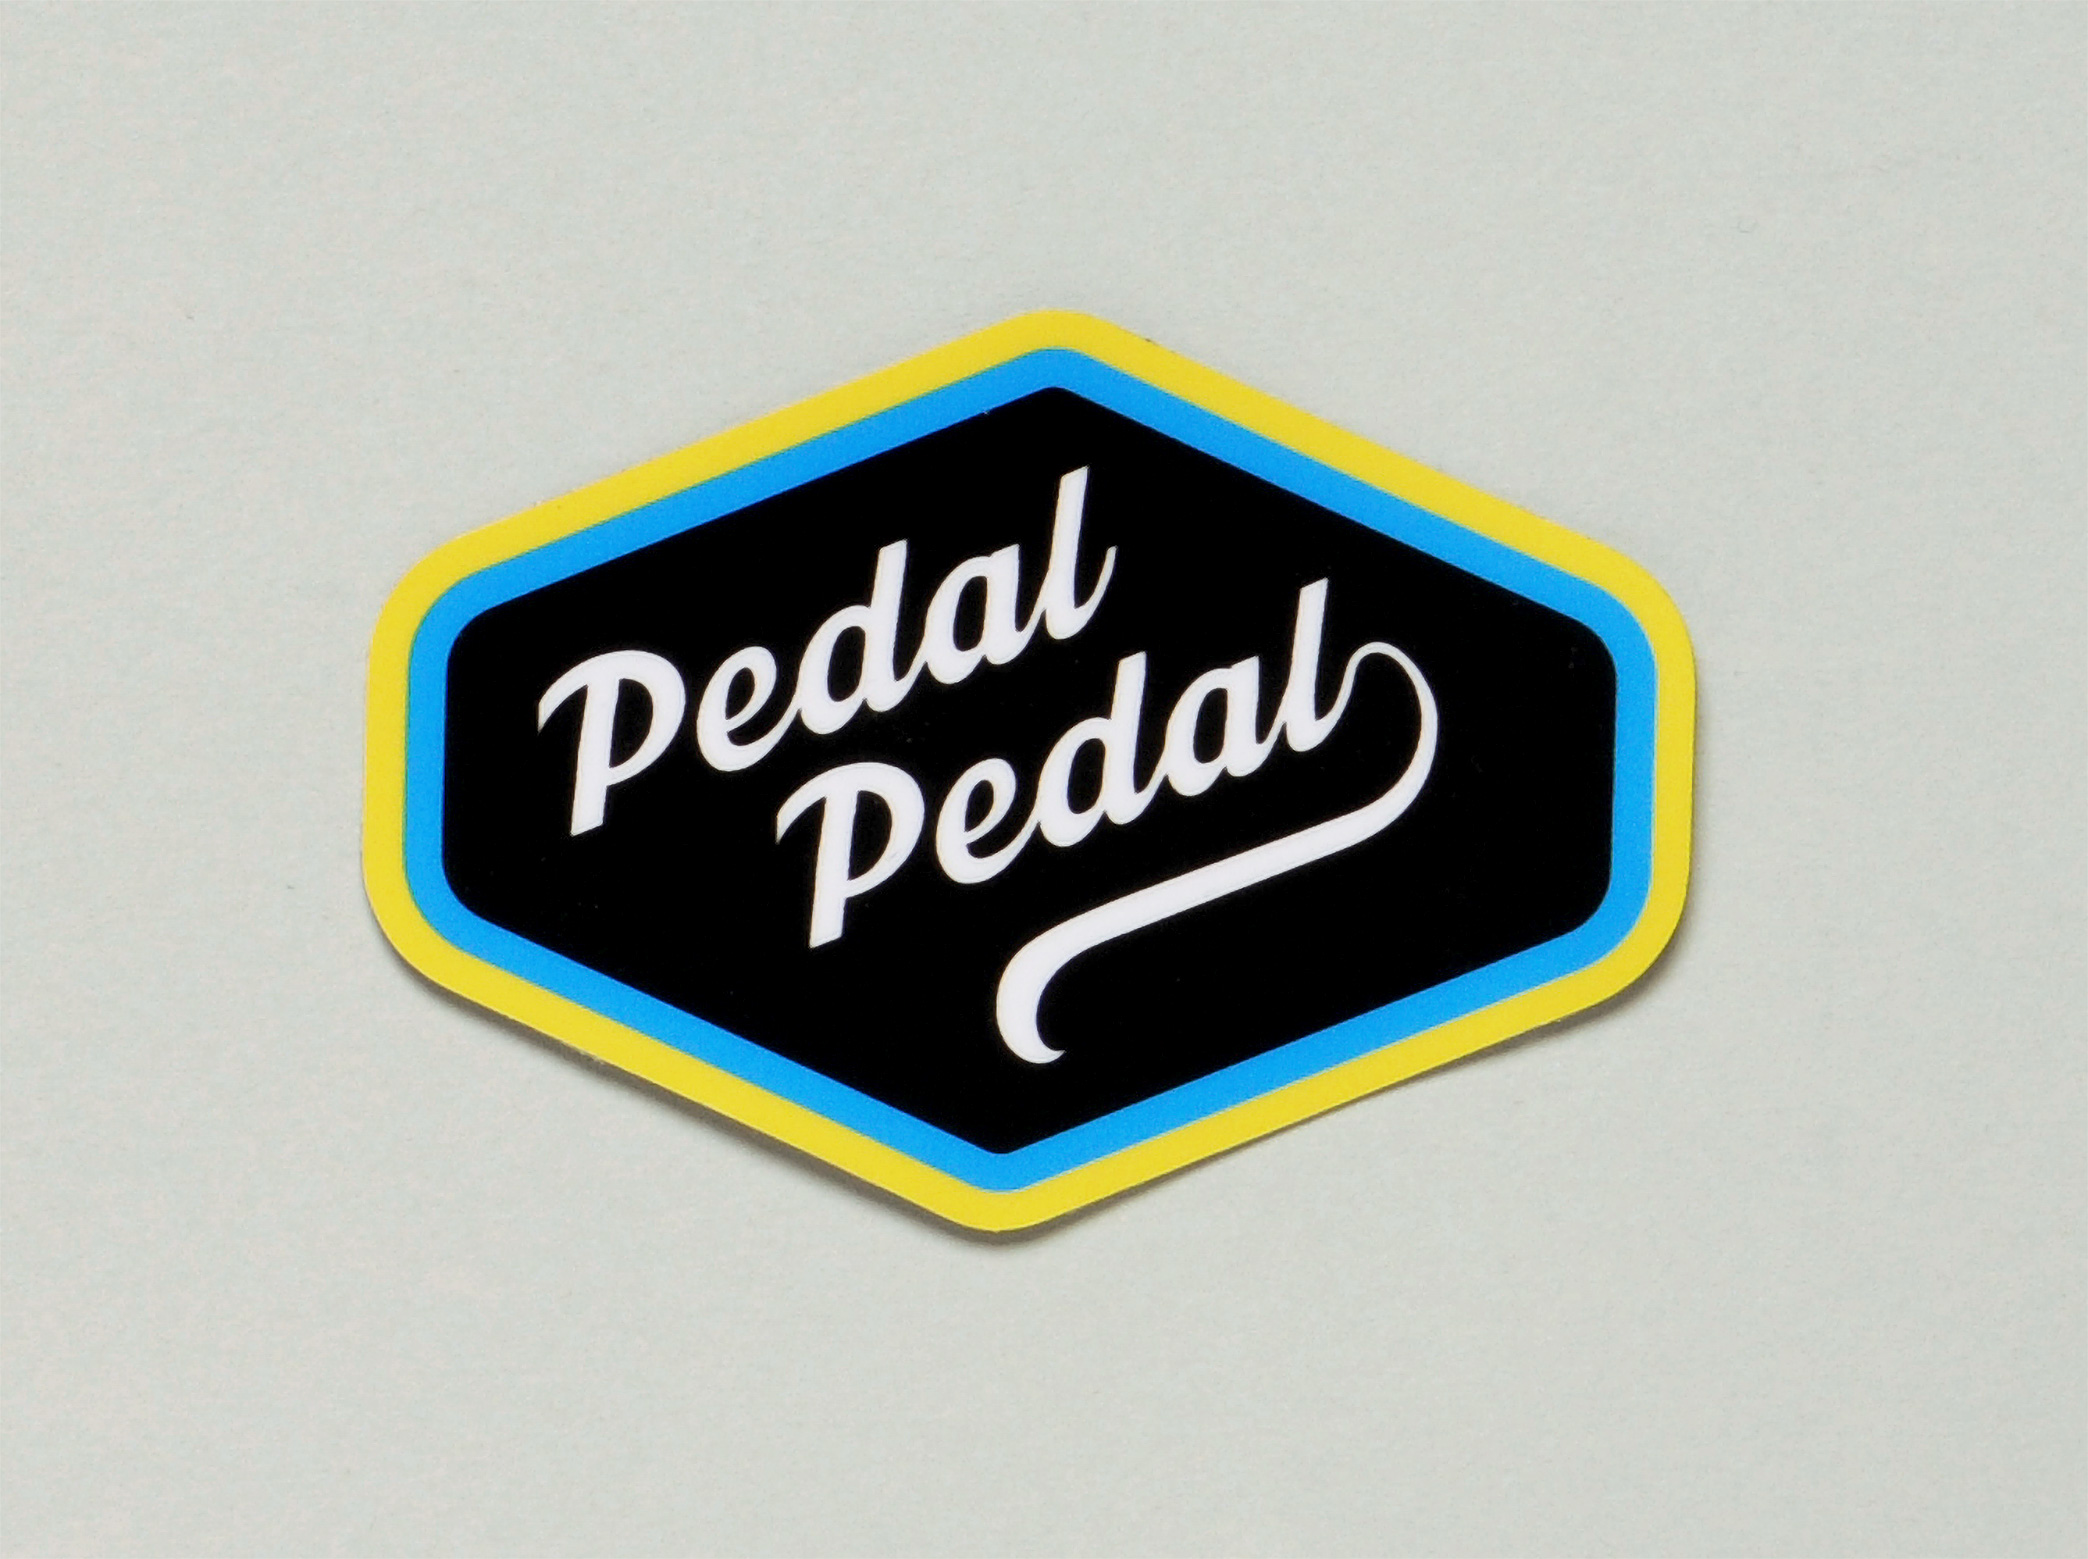 Pedal Pedal